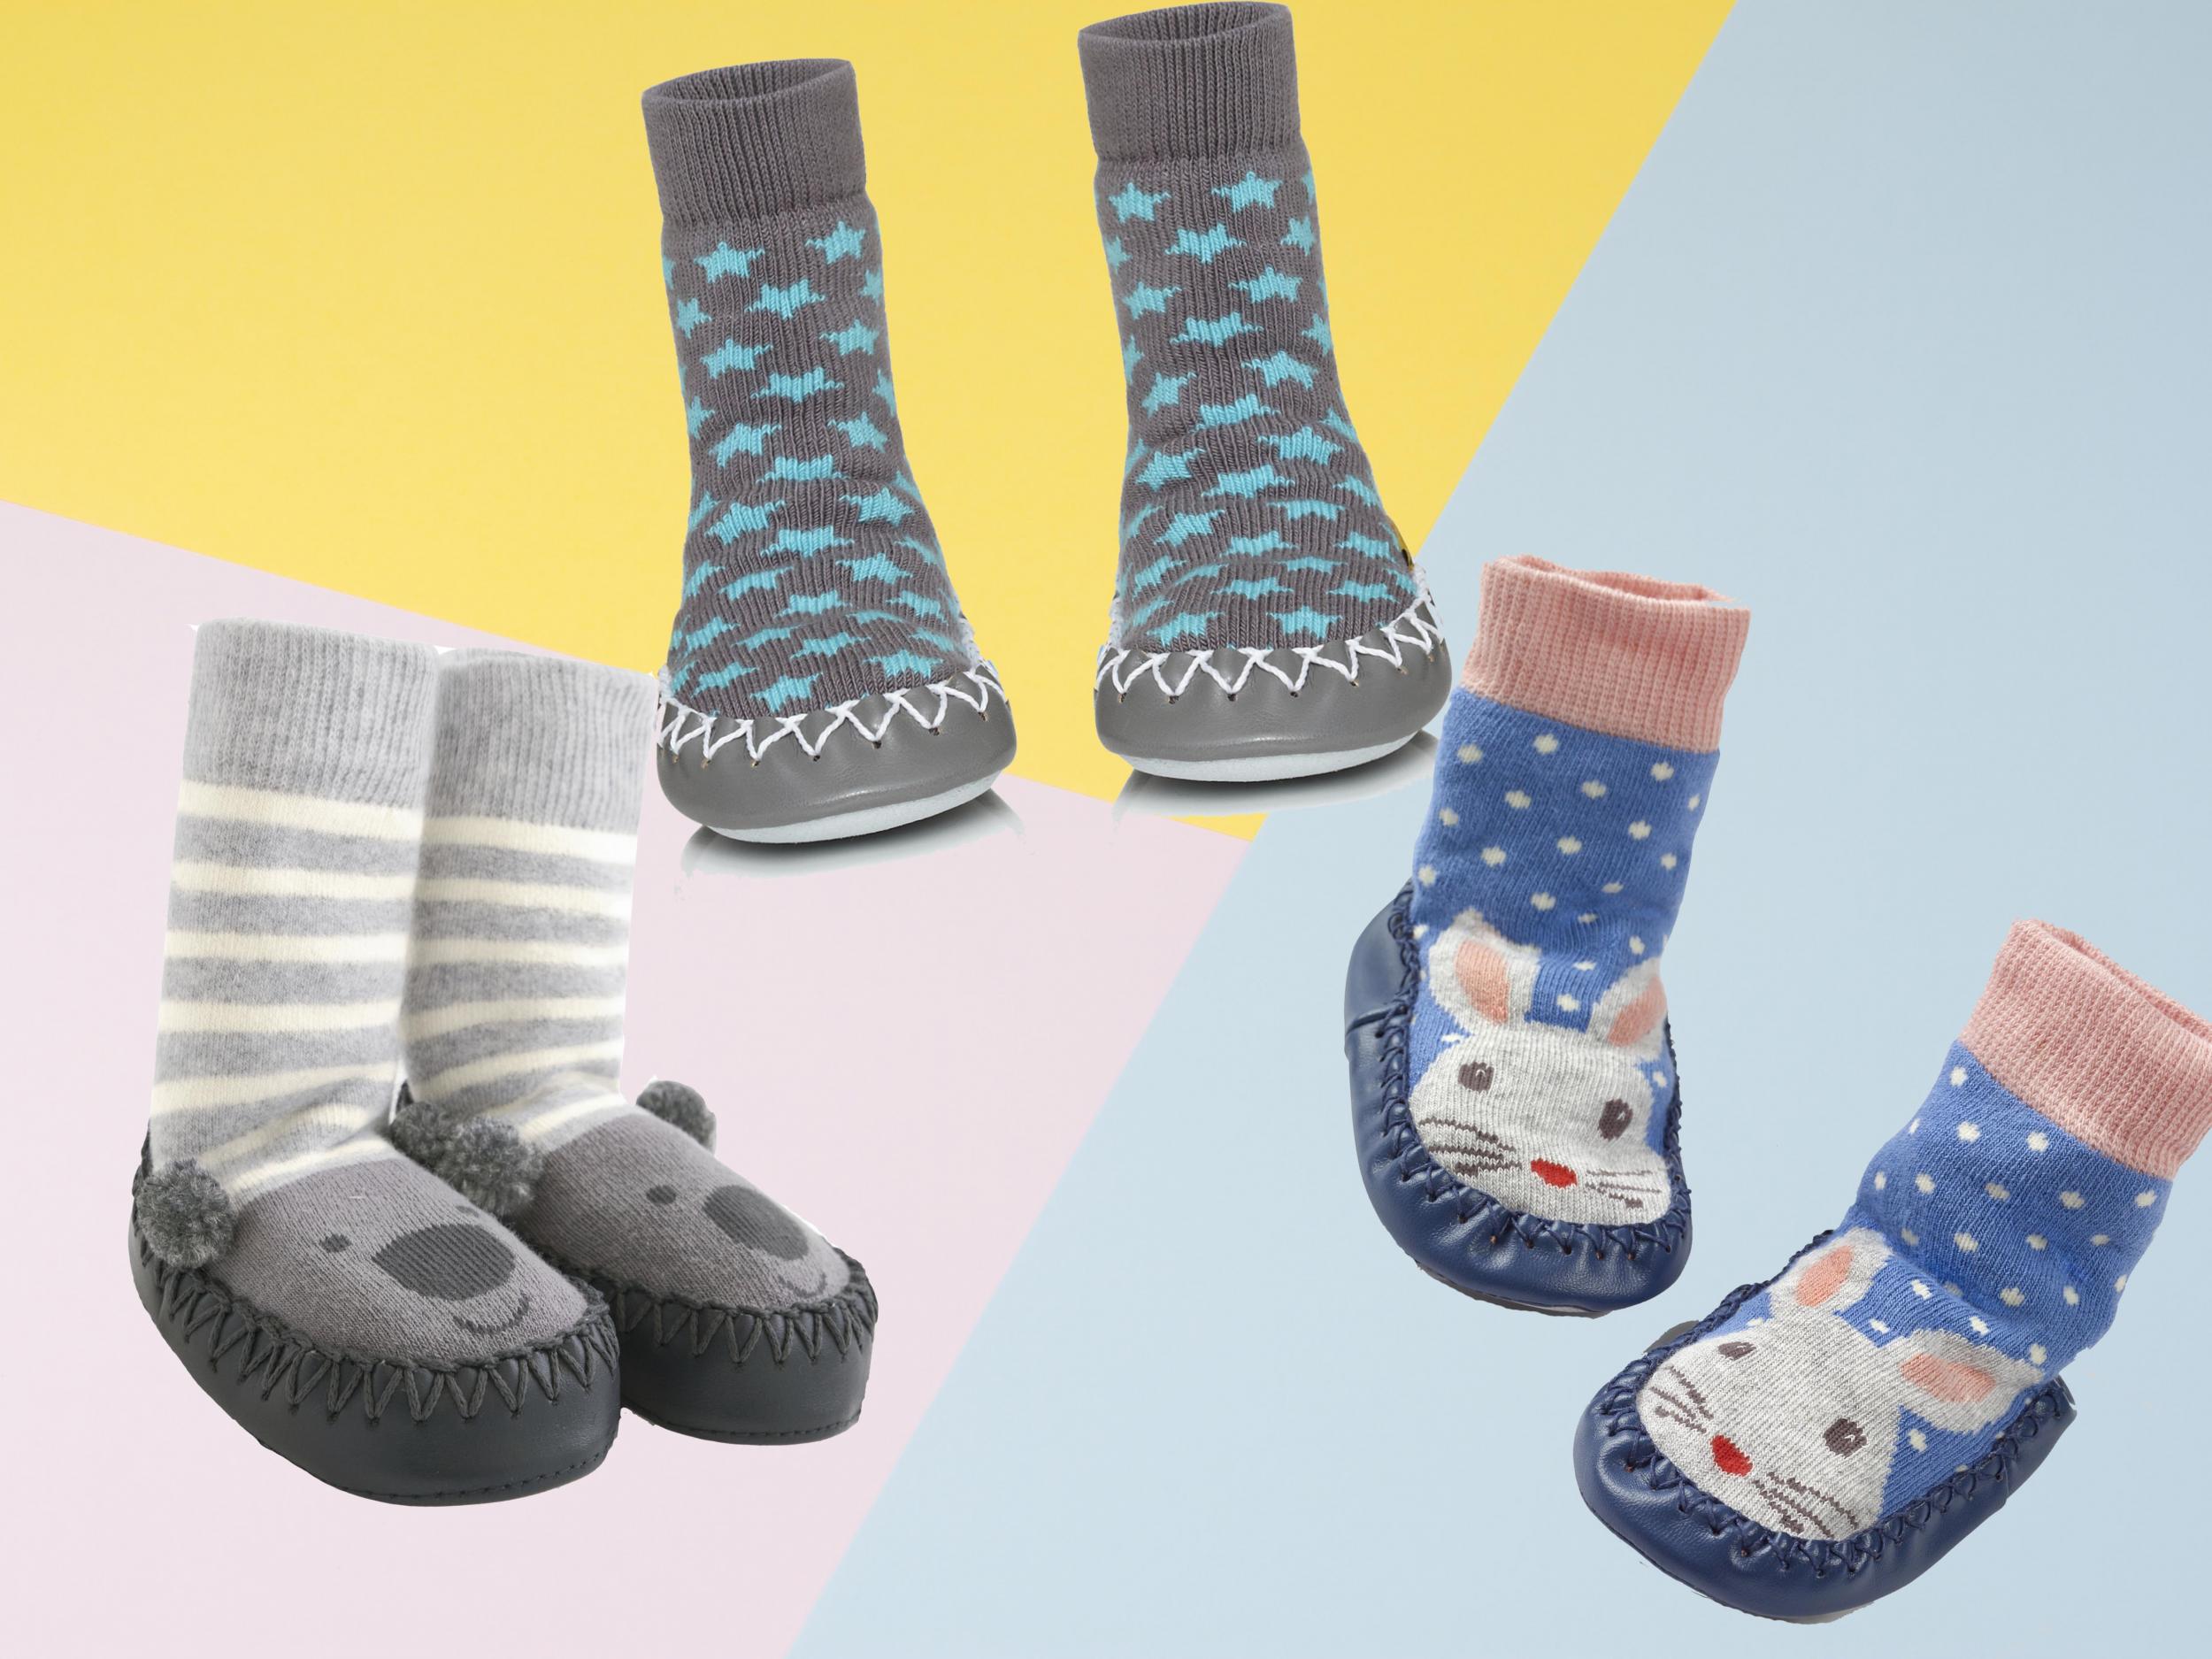 XLKJ 3 Pairs Baby Thick Warm Winter Socks Kids Fluffy Booties Cuff Socks Anti-slip Slipper Socks for Newborn Boys Girls